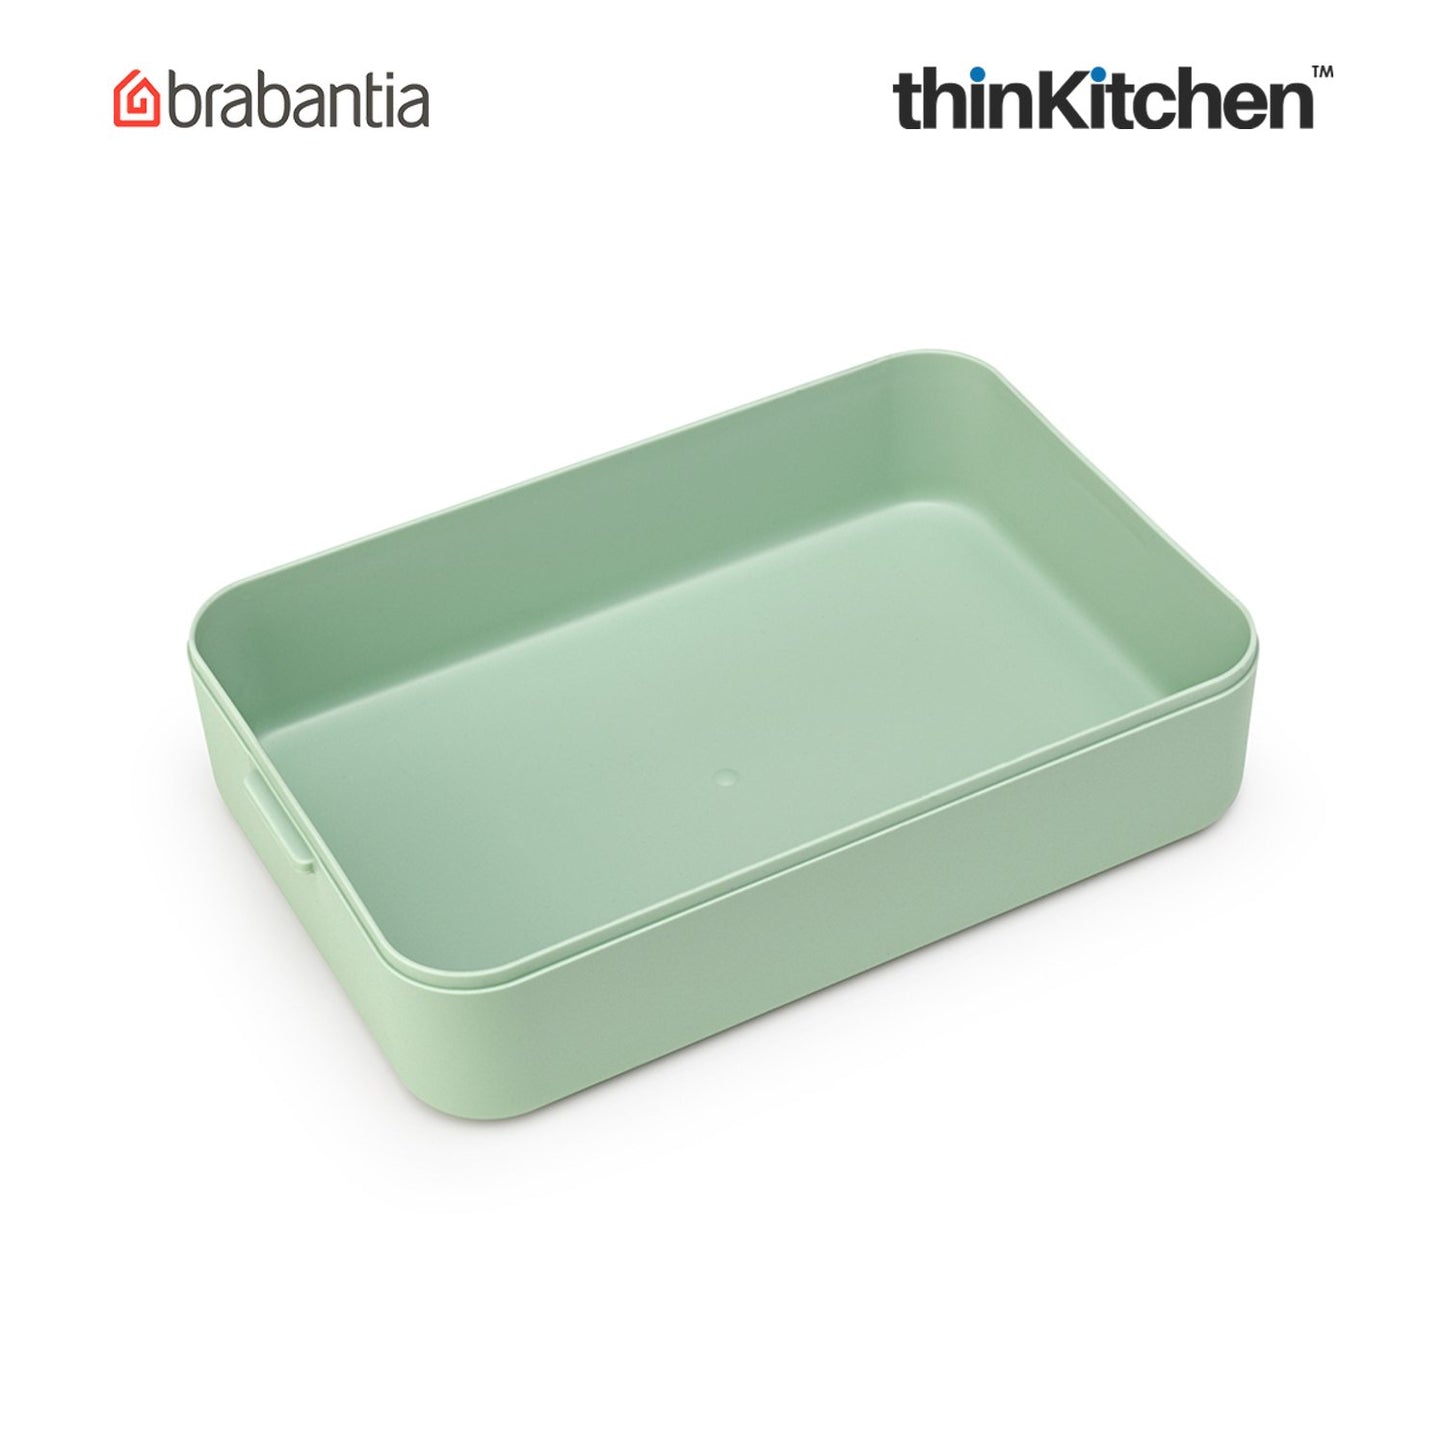 Brabantia Make Take Large Lunch Box Jade Green